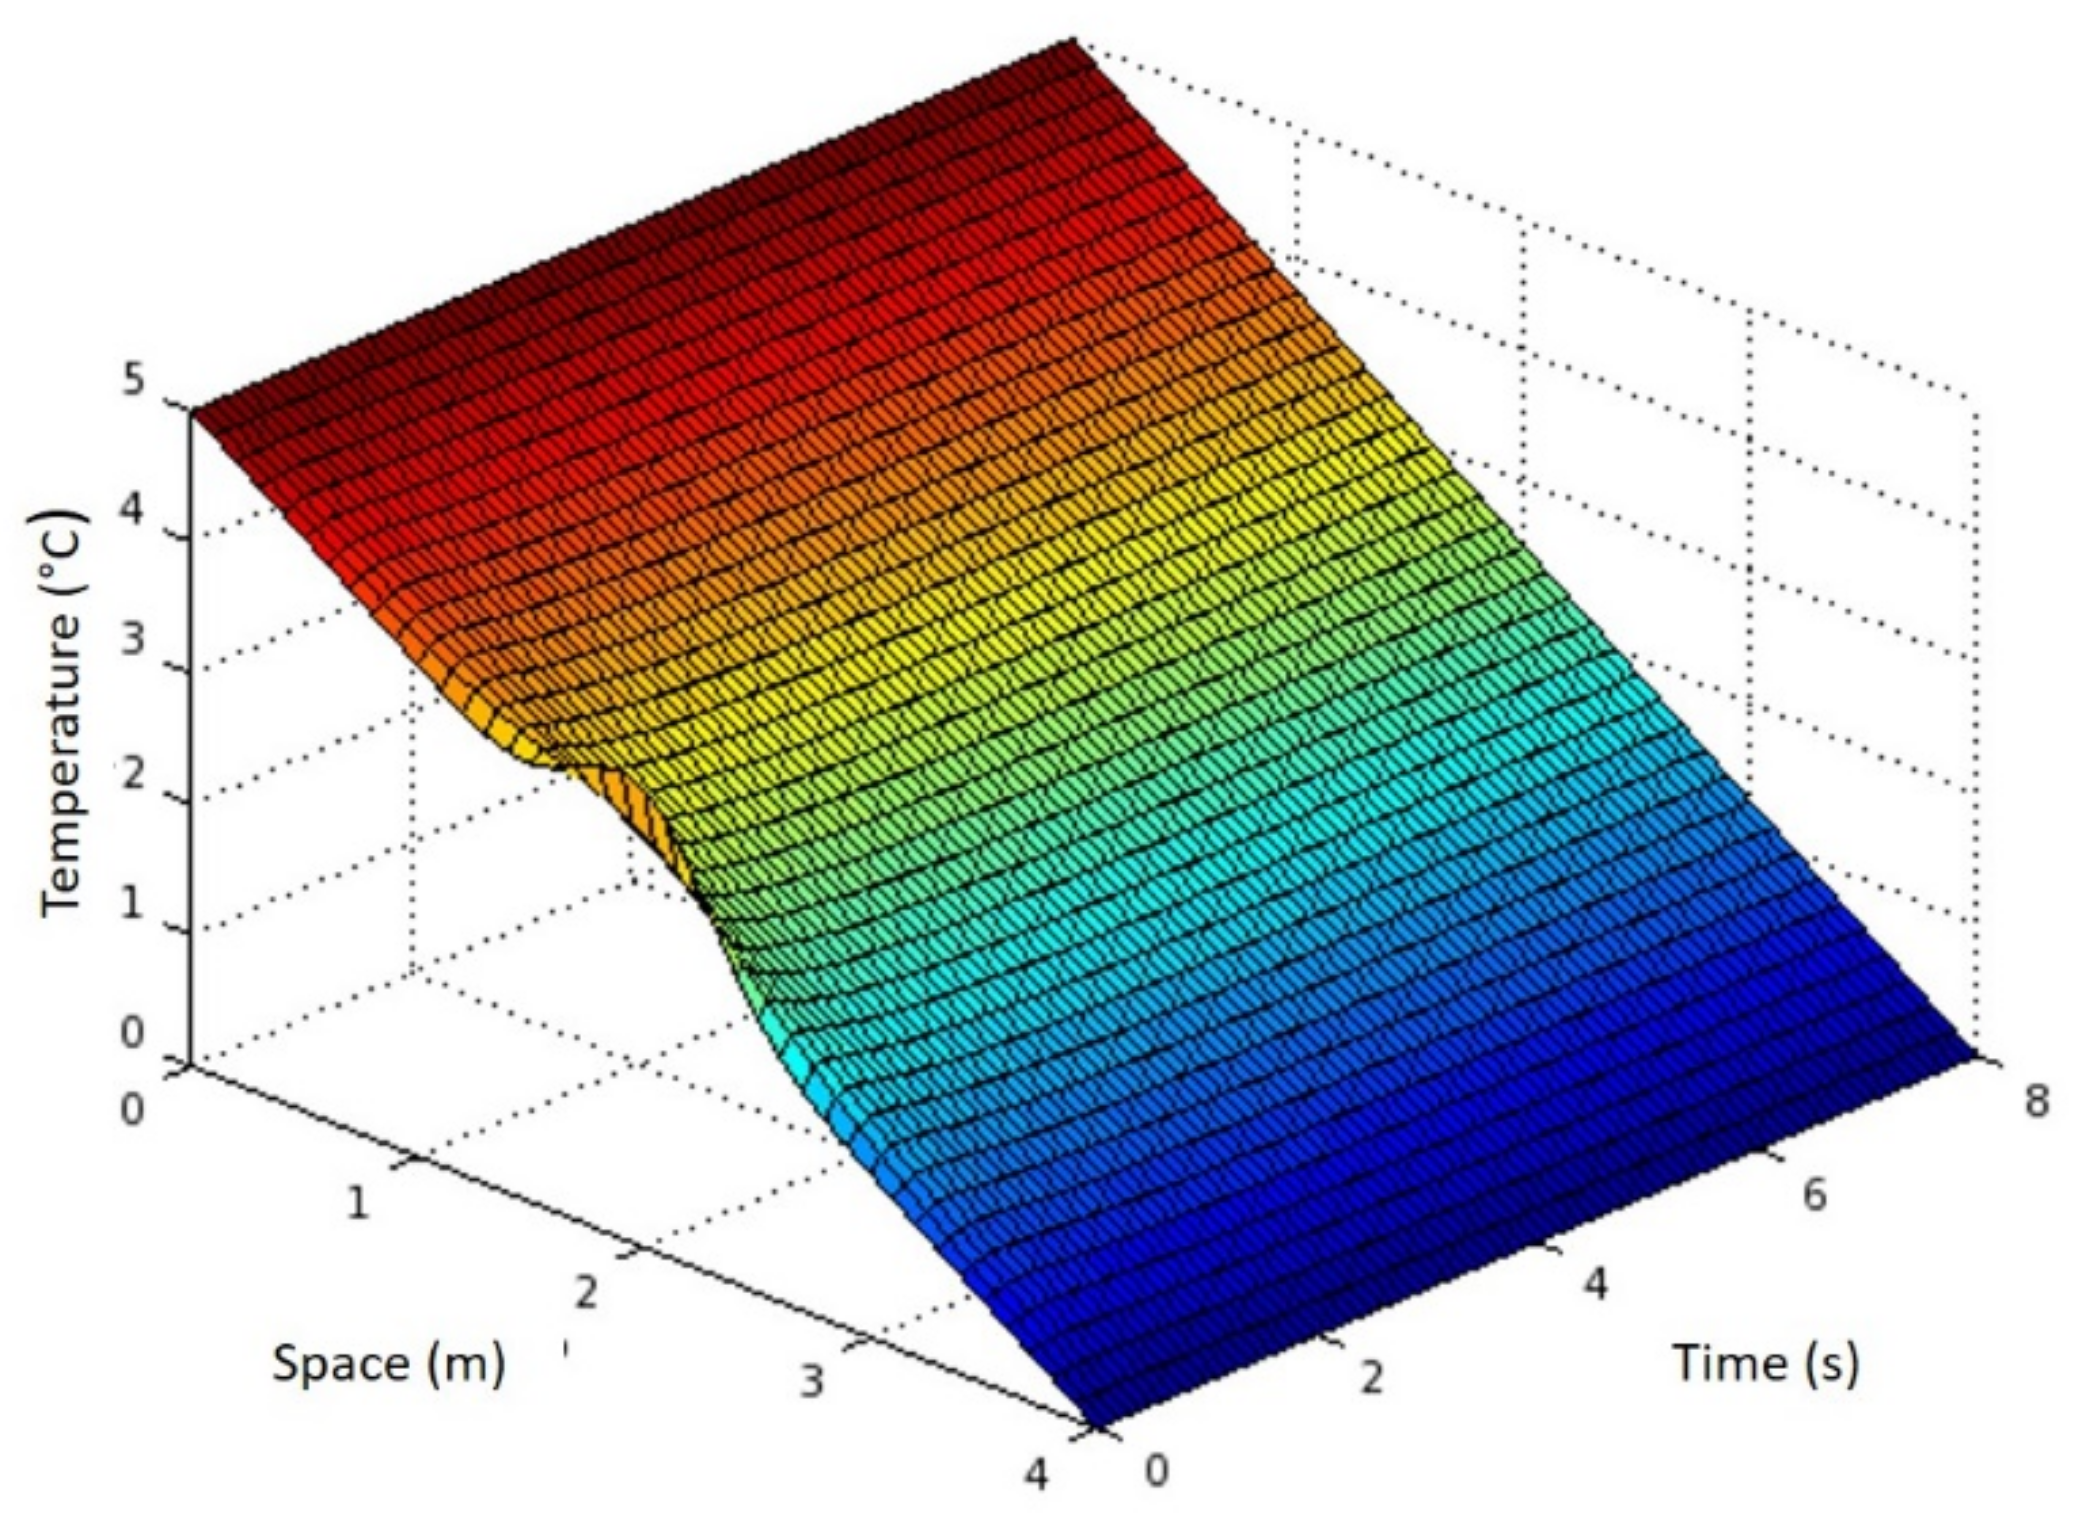 Space equal. Finite difference Filter фильтр изображения. Уравнение диффузии для магнитного поля. Python Heat equation. Finite difference Filter.